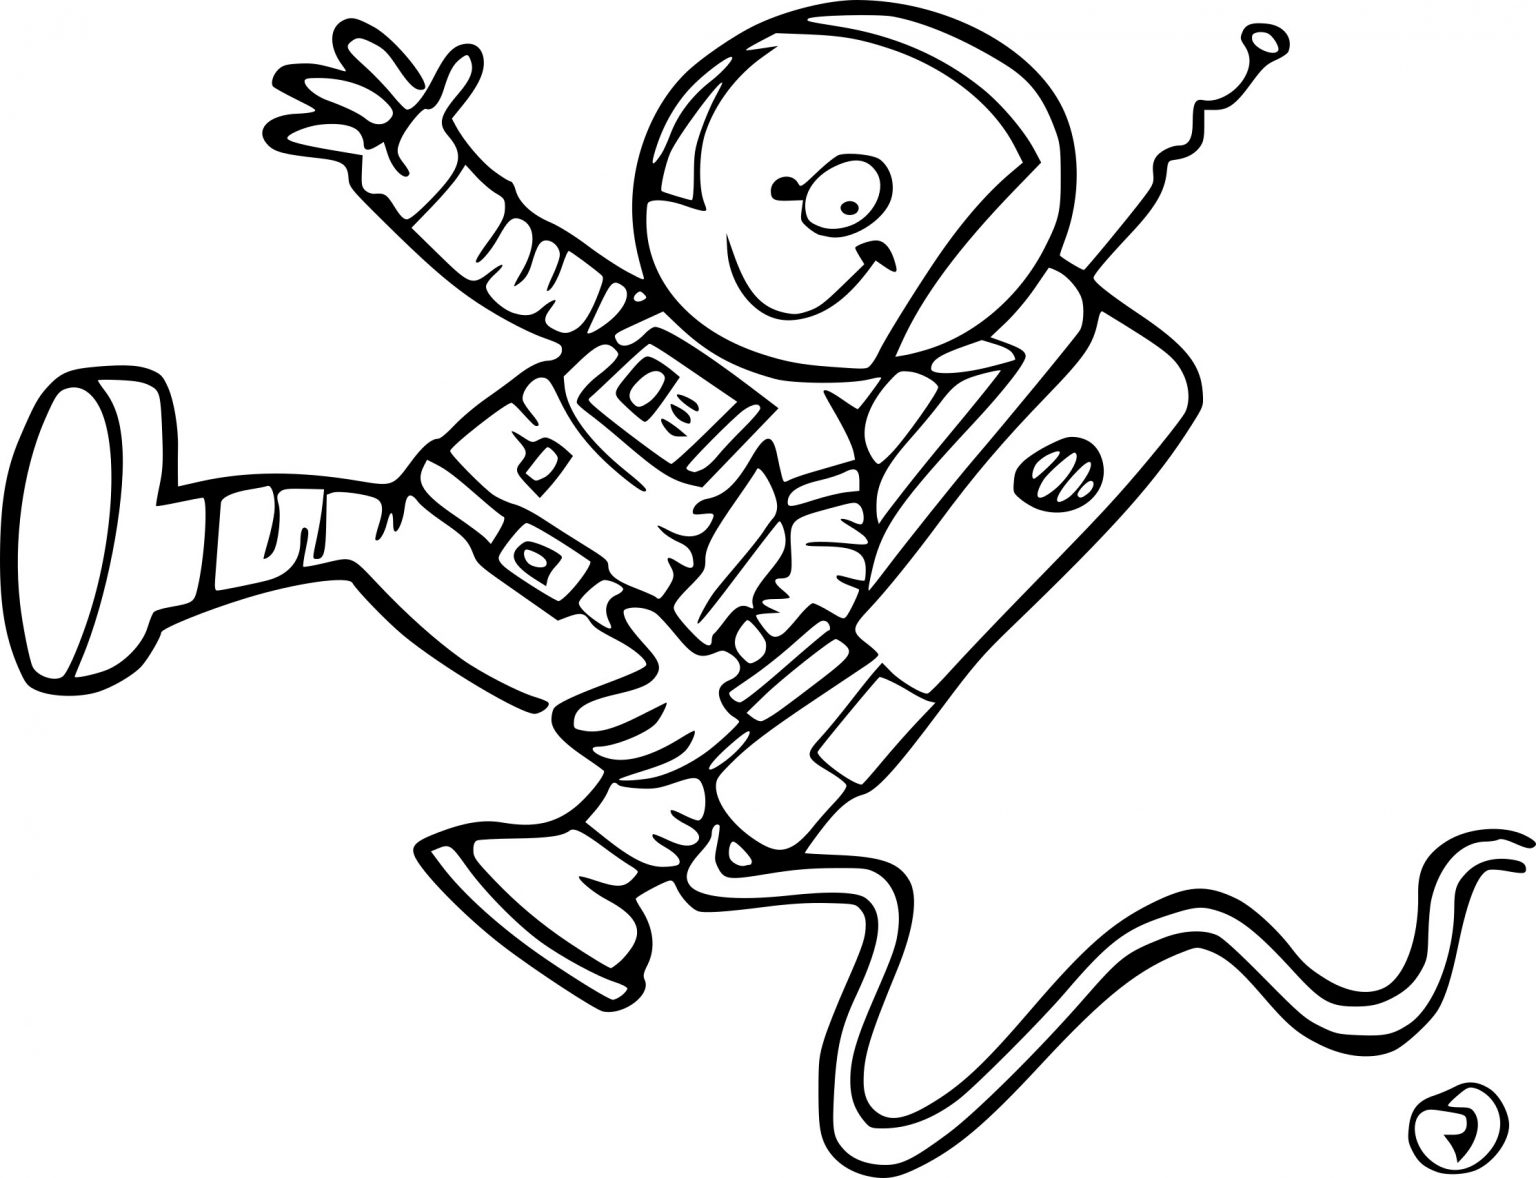 Coloriage Astronaute - Primanyc tout Coloriage Astronaute